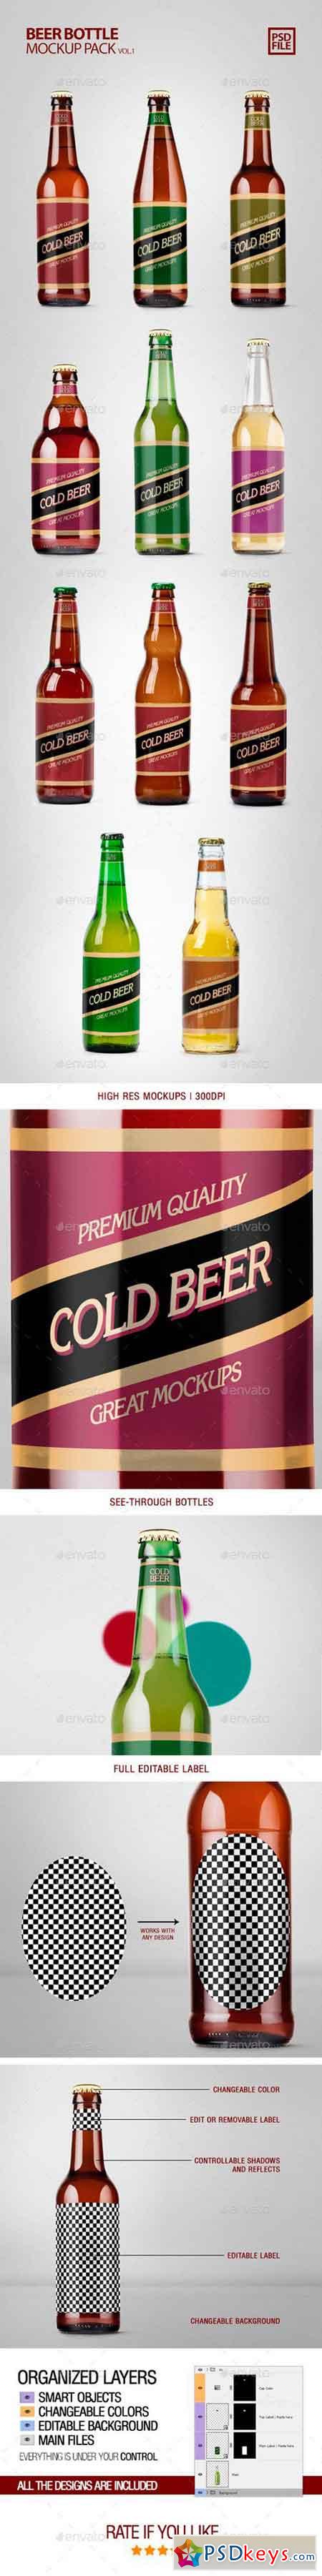 Beer Bottle Mockup Pack Vol1 22063851